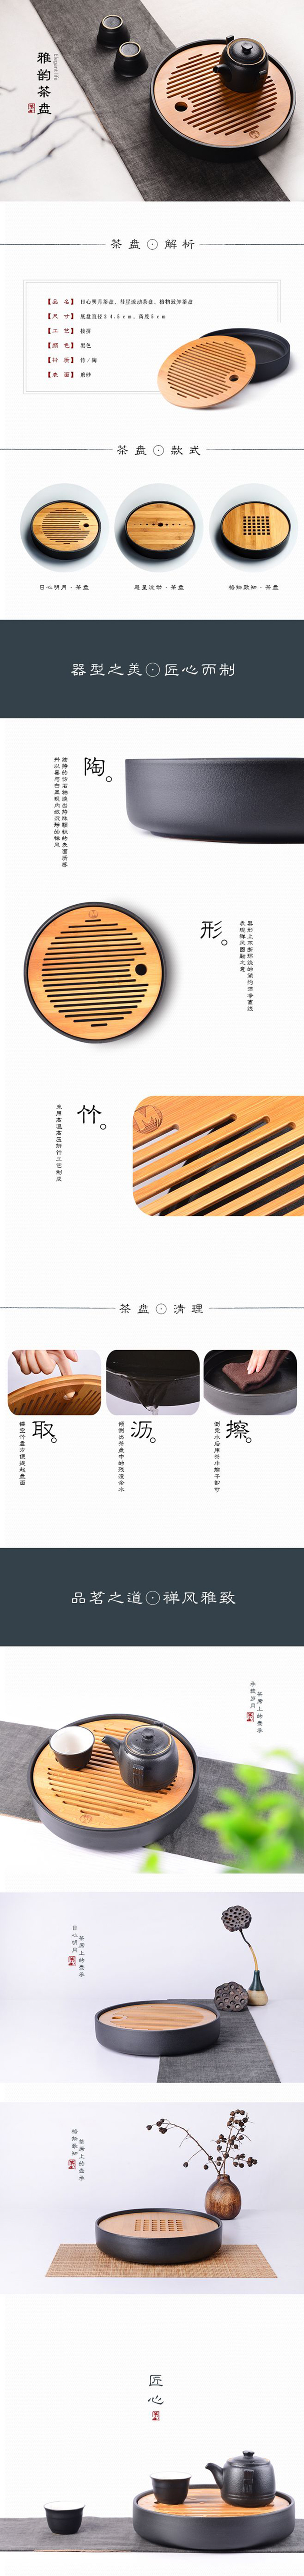 淘宝美工海狸猫茶盘 木质陶瓷 中国风 时尚 详情页作品